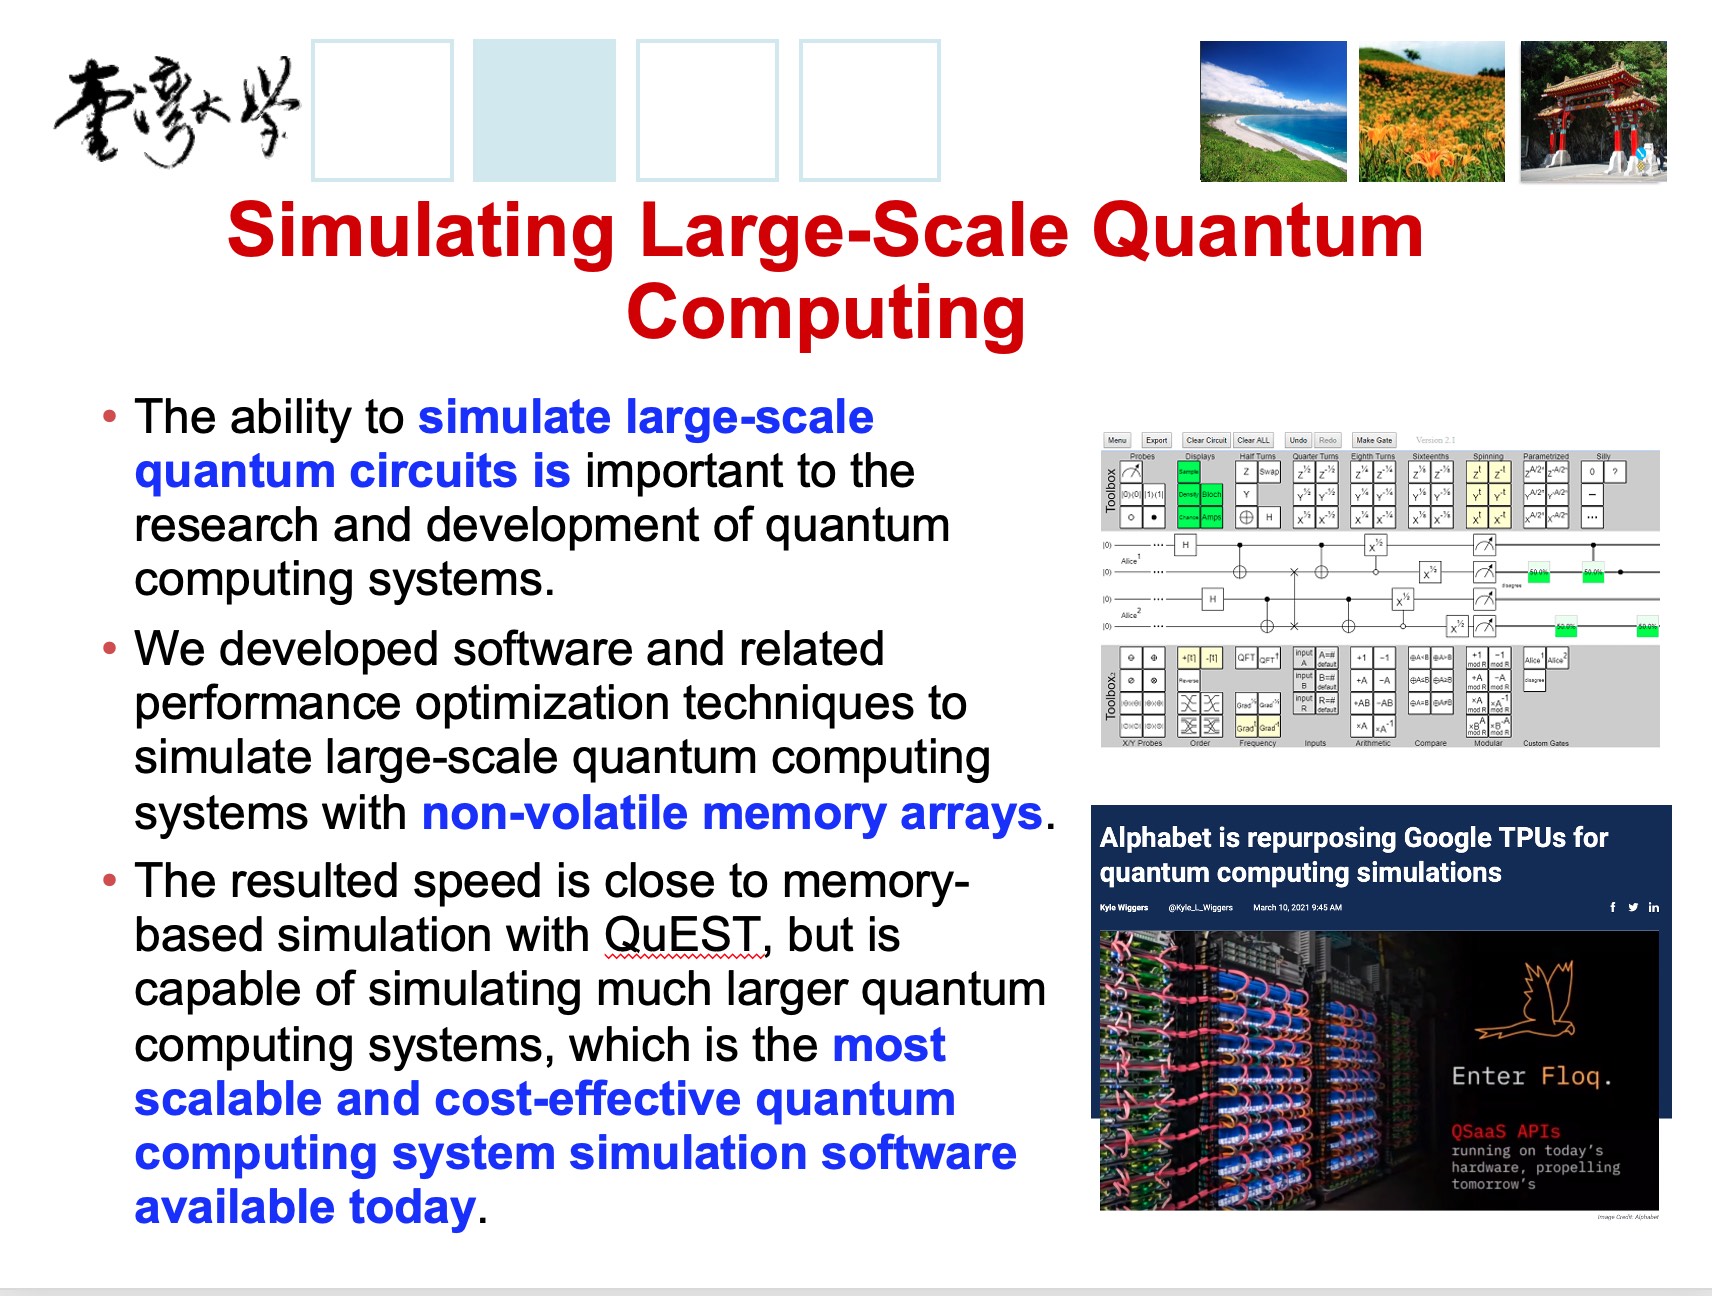 以高速非揮發性記憶體陣列進行大型量子計算系統之模擬